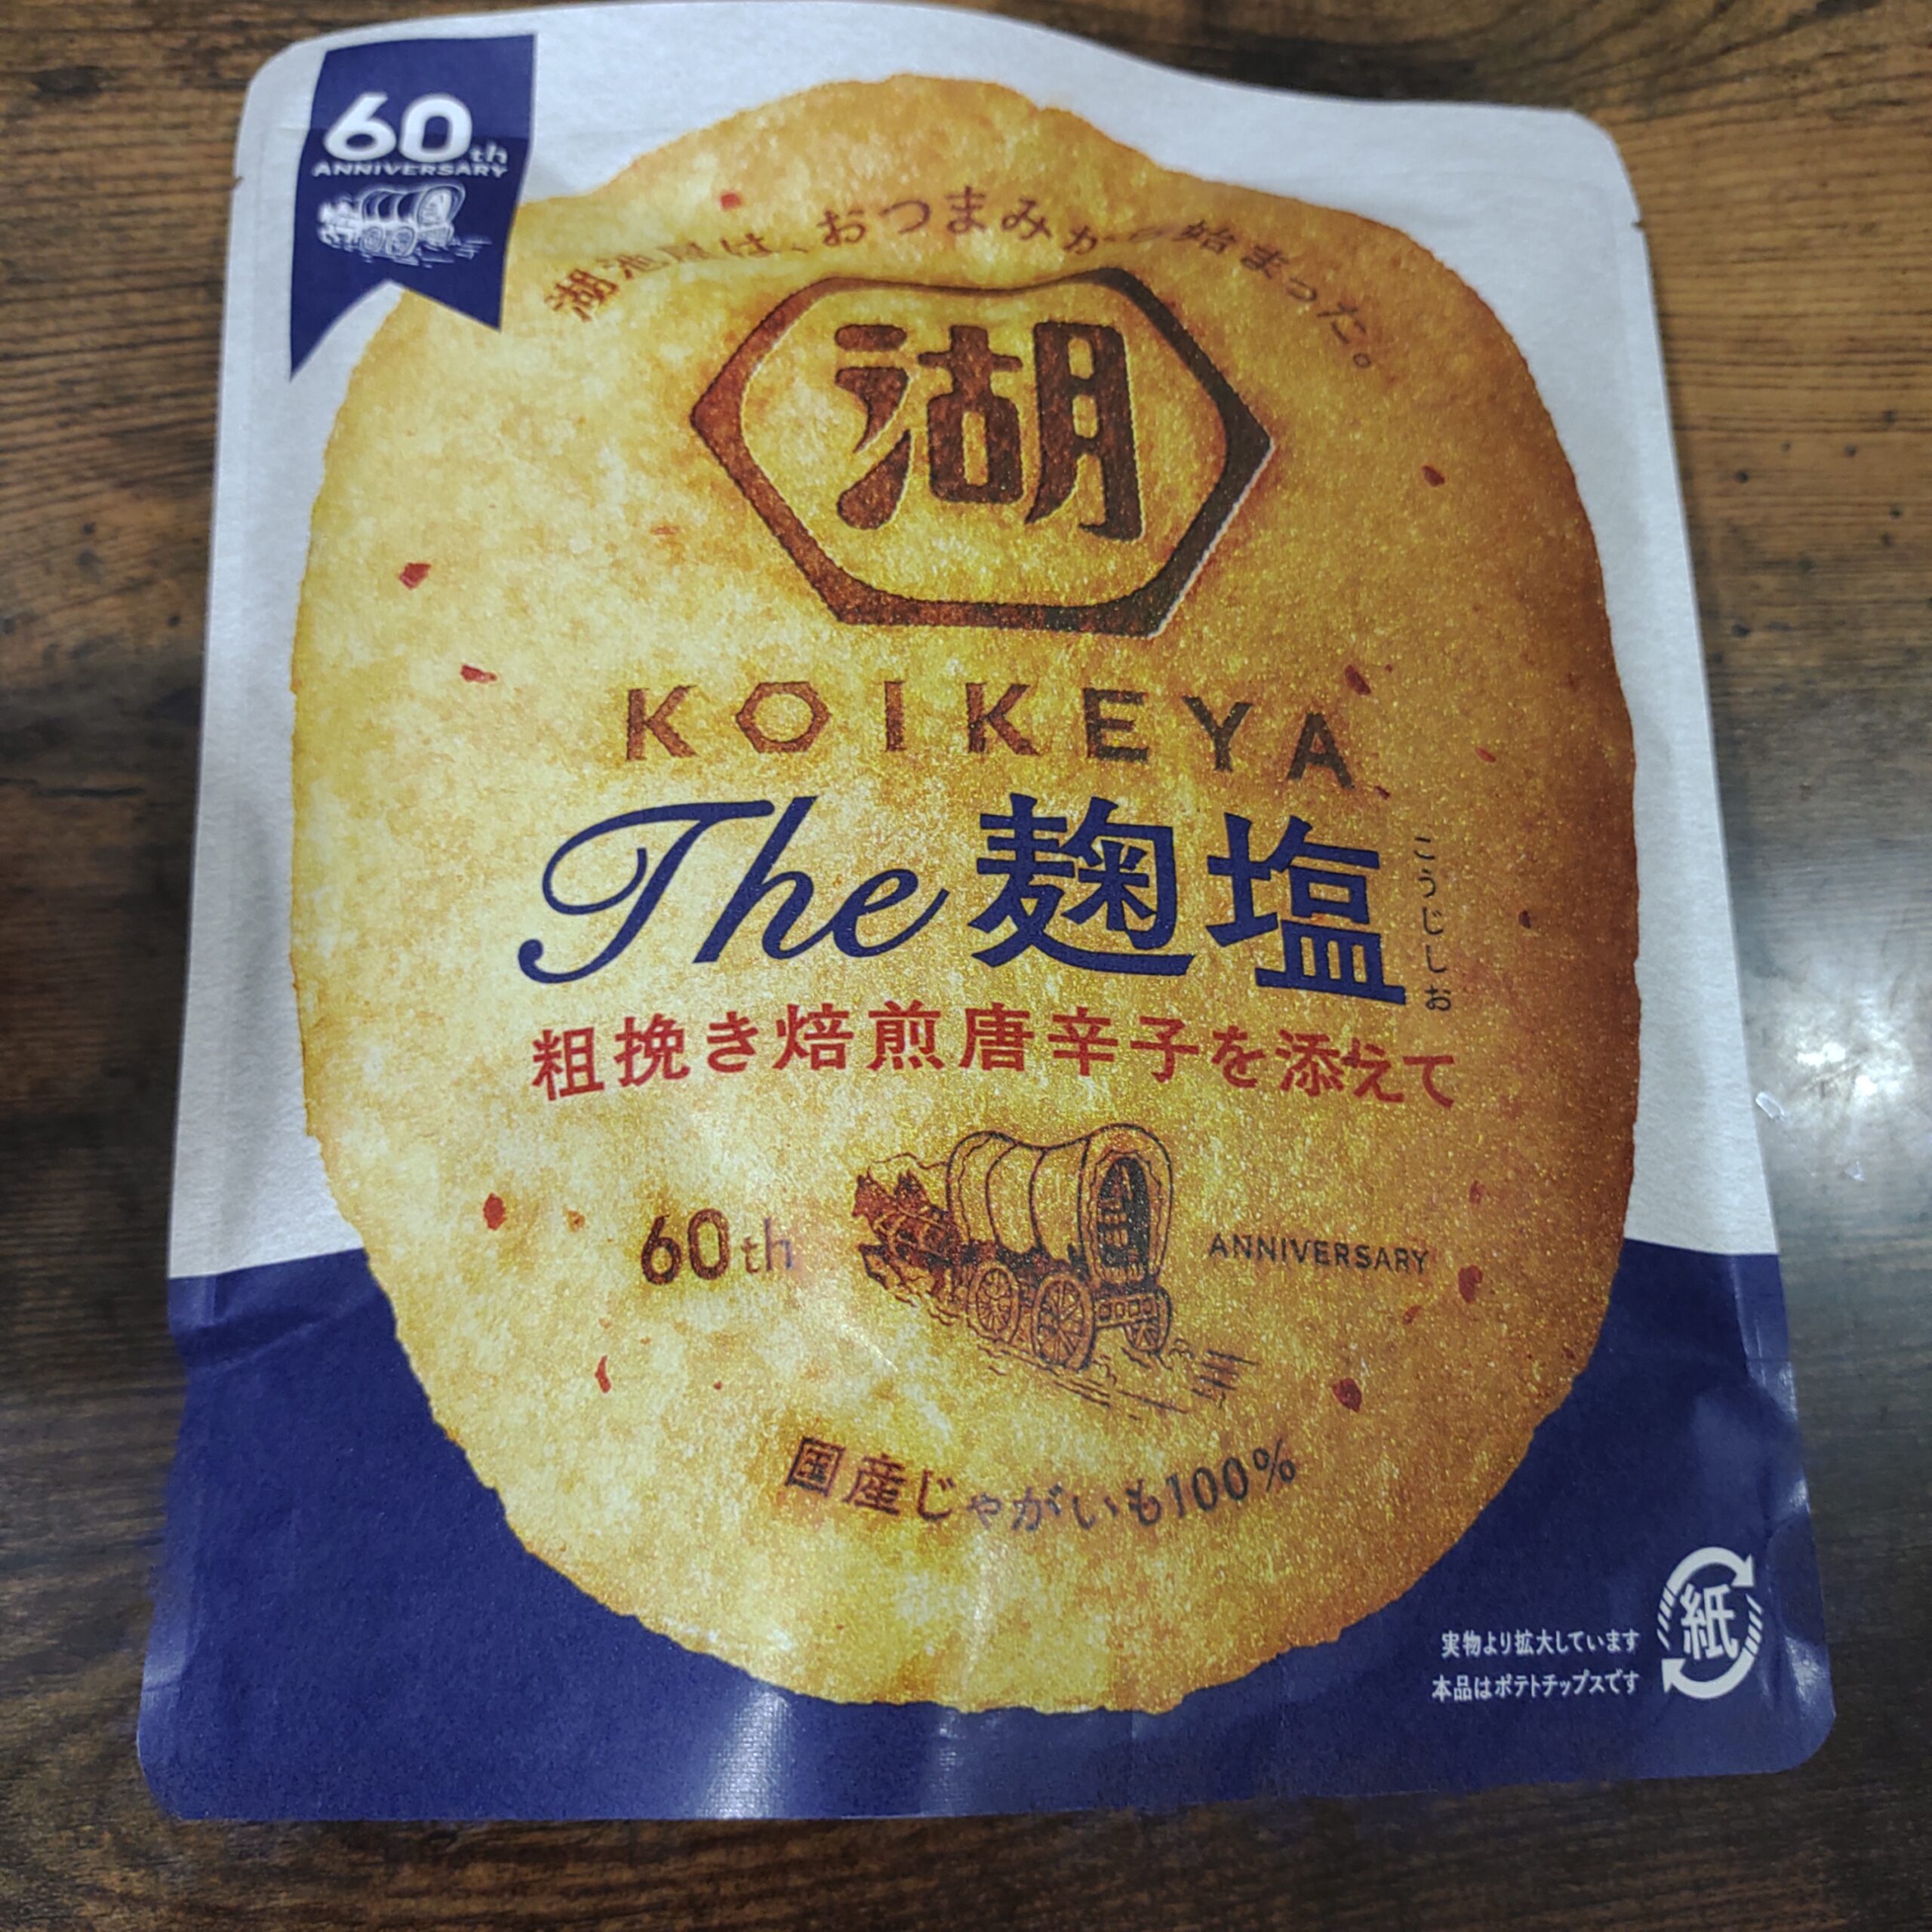 KOIKEYA The 麹塩